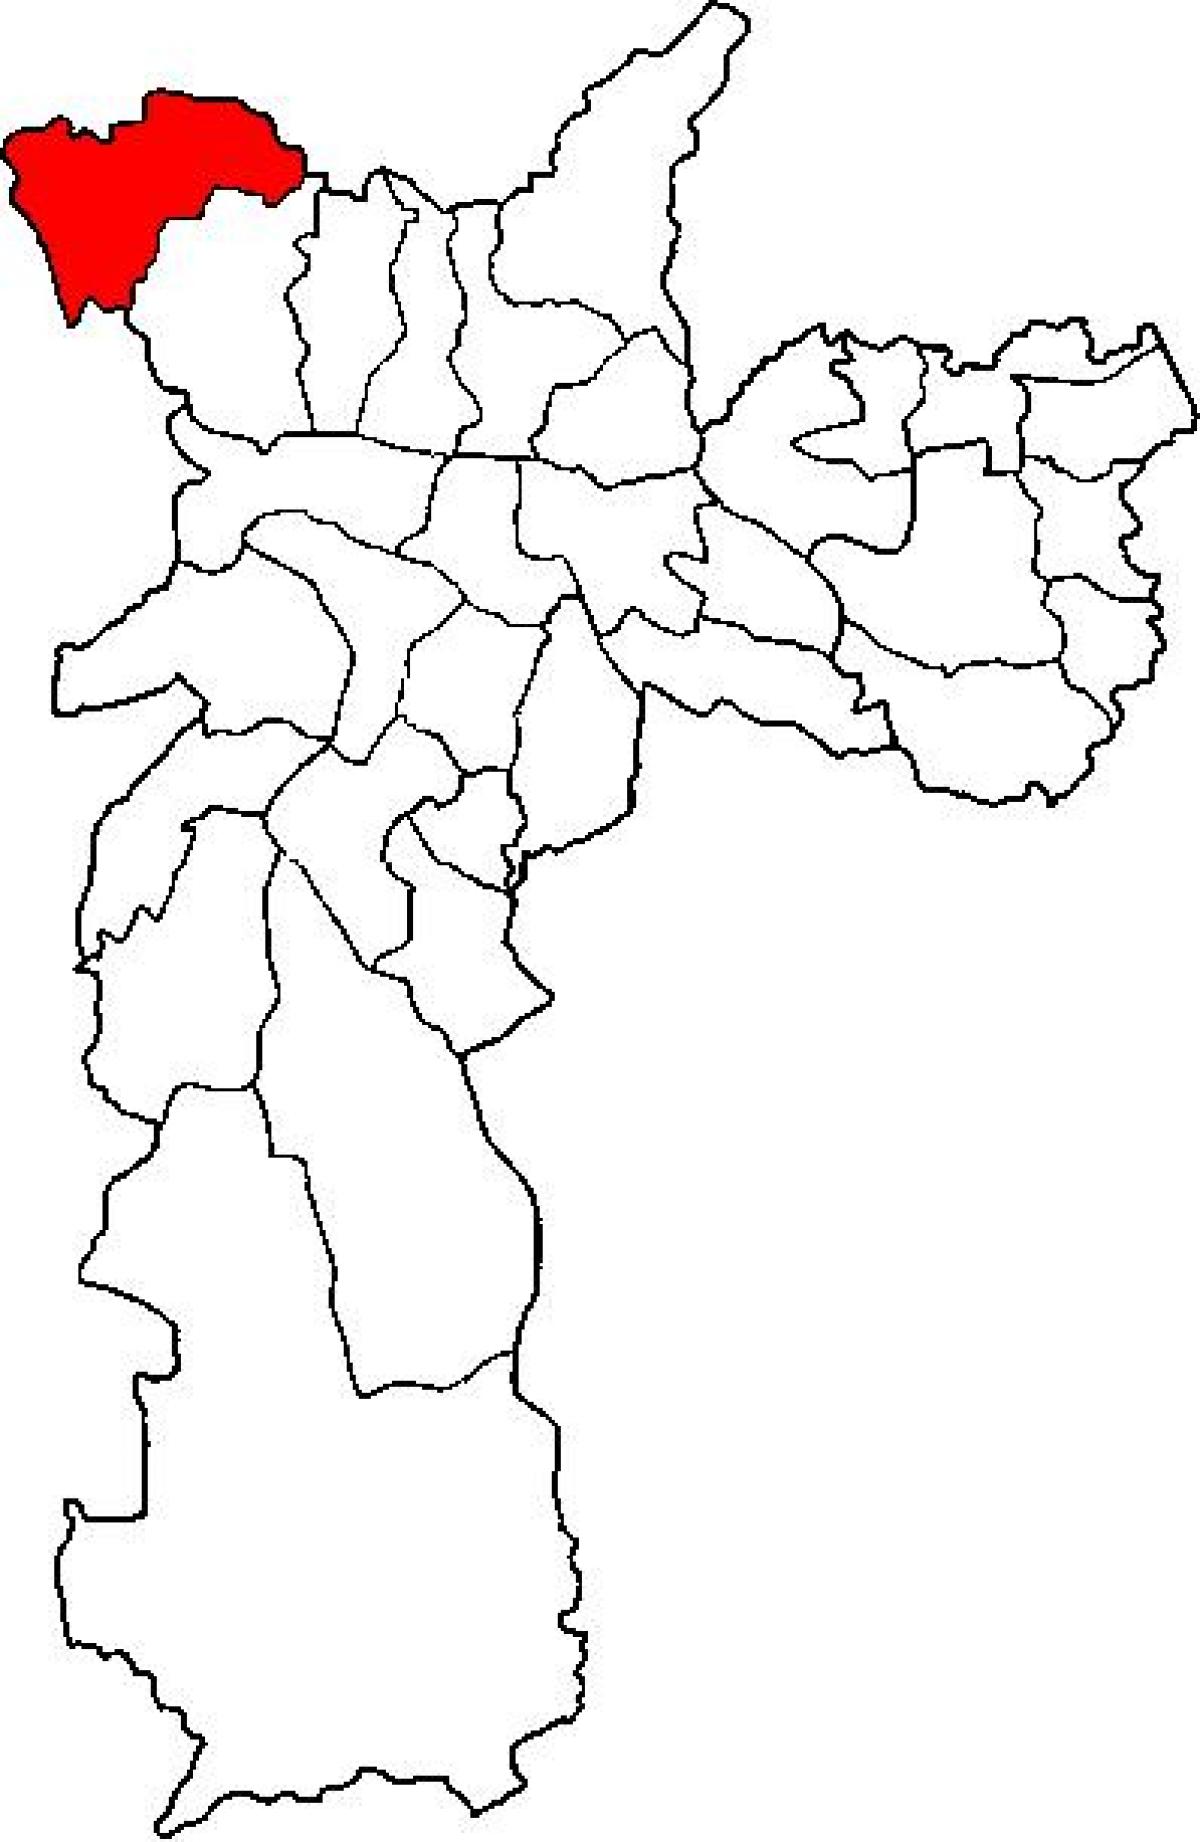 نقشہ کے Perus ذیلی صوبے ساؤ پالو